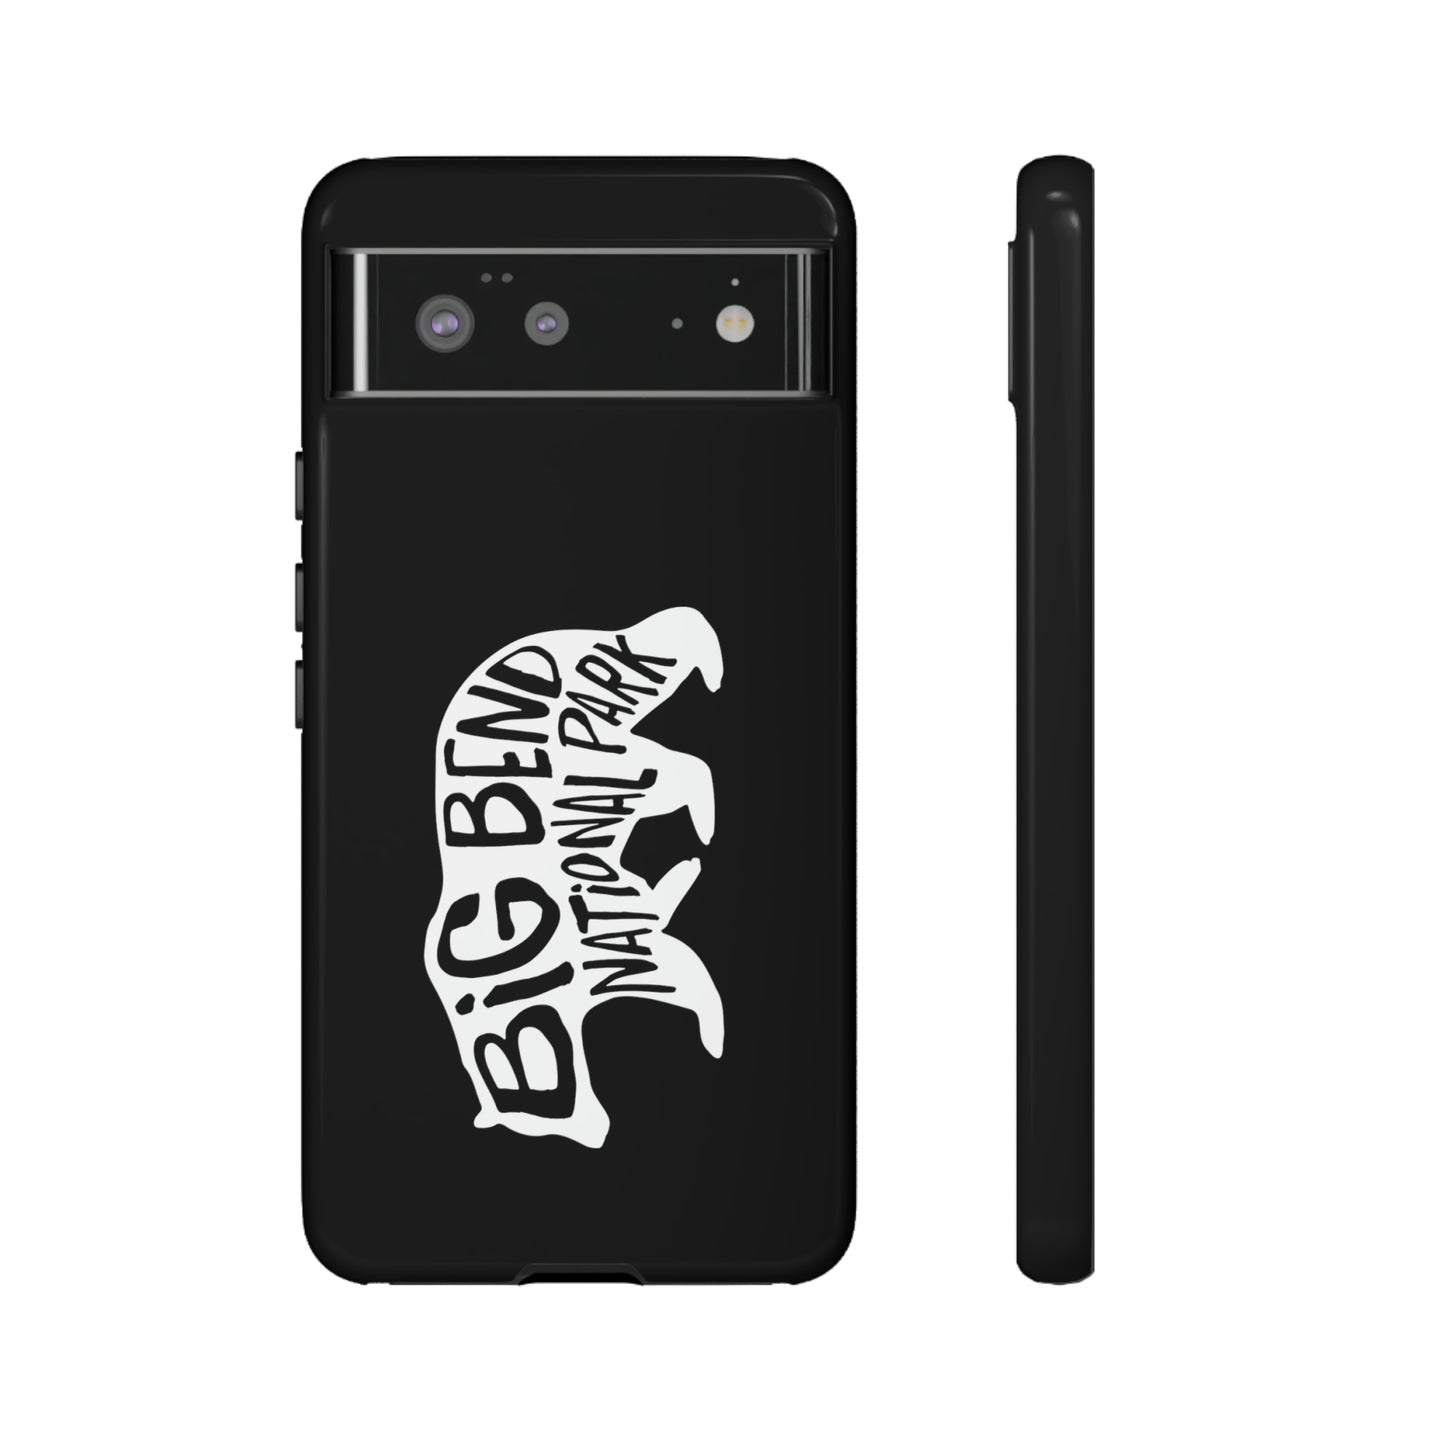 Big Bend National Park Phone Case - Black Bear Design